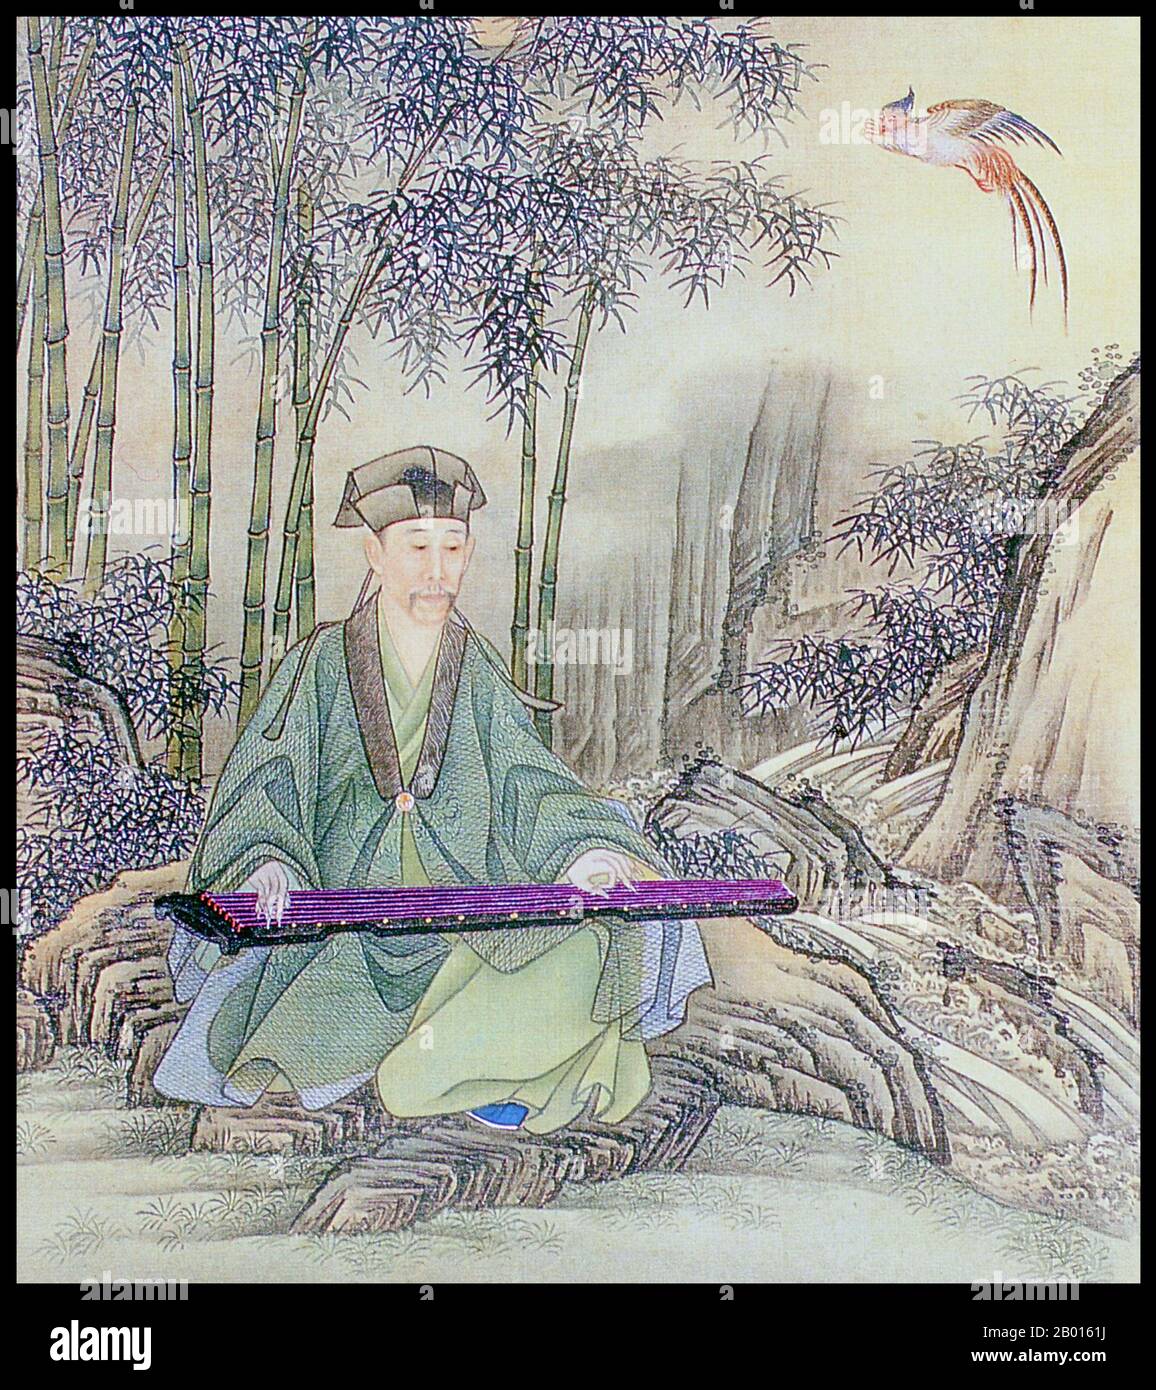 Cina: Imperatore Yongzheng (13 dicembre 1678 – 8 ottobre 1735), 5° governatore della dinastia Qing (r. 1722-1735), giocando un guzheng. Album foglia pittura, c.. 1723-1735. L'imperatore Yongzheng, nato Yinzhen e il nome del tempio Shizong, era il quinto imperatore della dinastia Qing. Un righello duro-funzionante, l'obiettivo principale di Yongzheng era quello di creare un governo efficace a spese minime. Come suo padre, l'imperatore Kangxi, Yongzheng usò la forza militare per preservare la posizione della dinastia. Sospettato dagli storici di aver usurpato il trono, il suo regno fu spesso chiamato dispotico, efficiente e vigoroso. Foto Stock